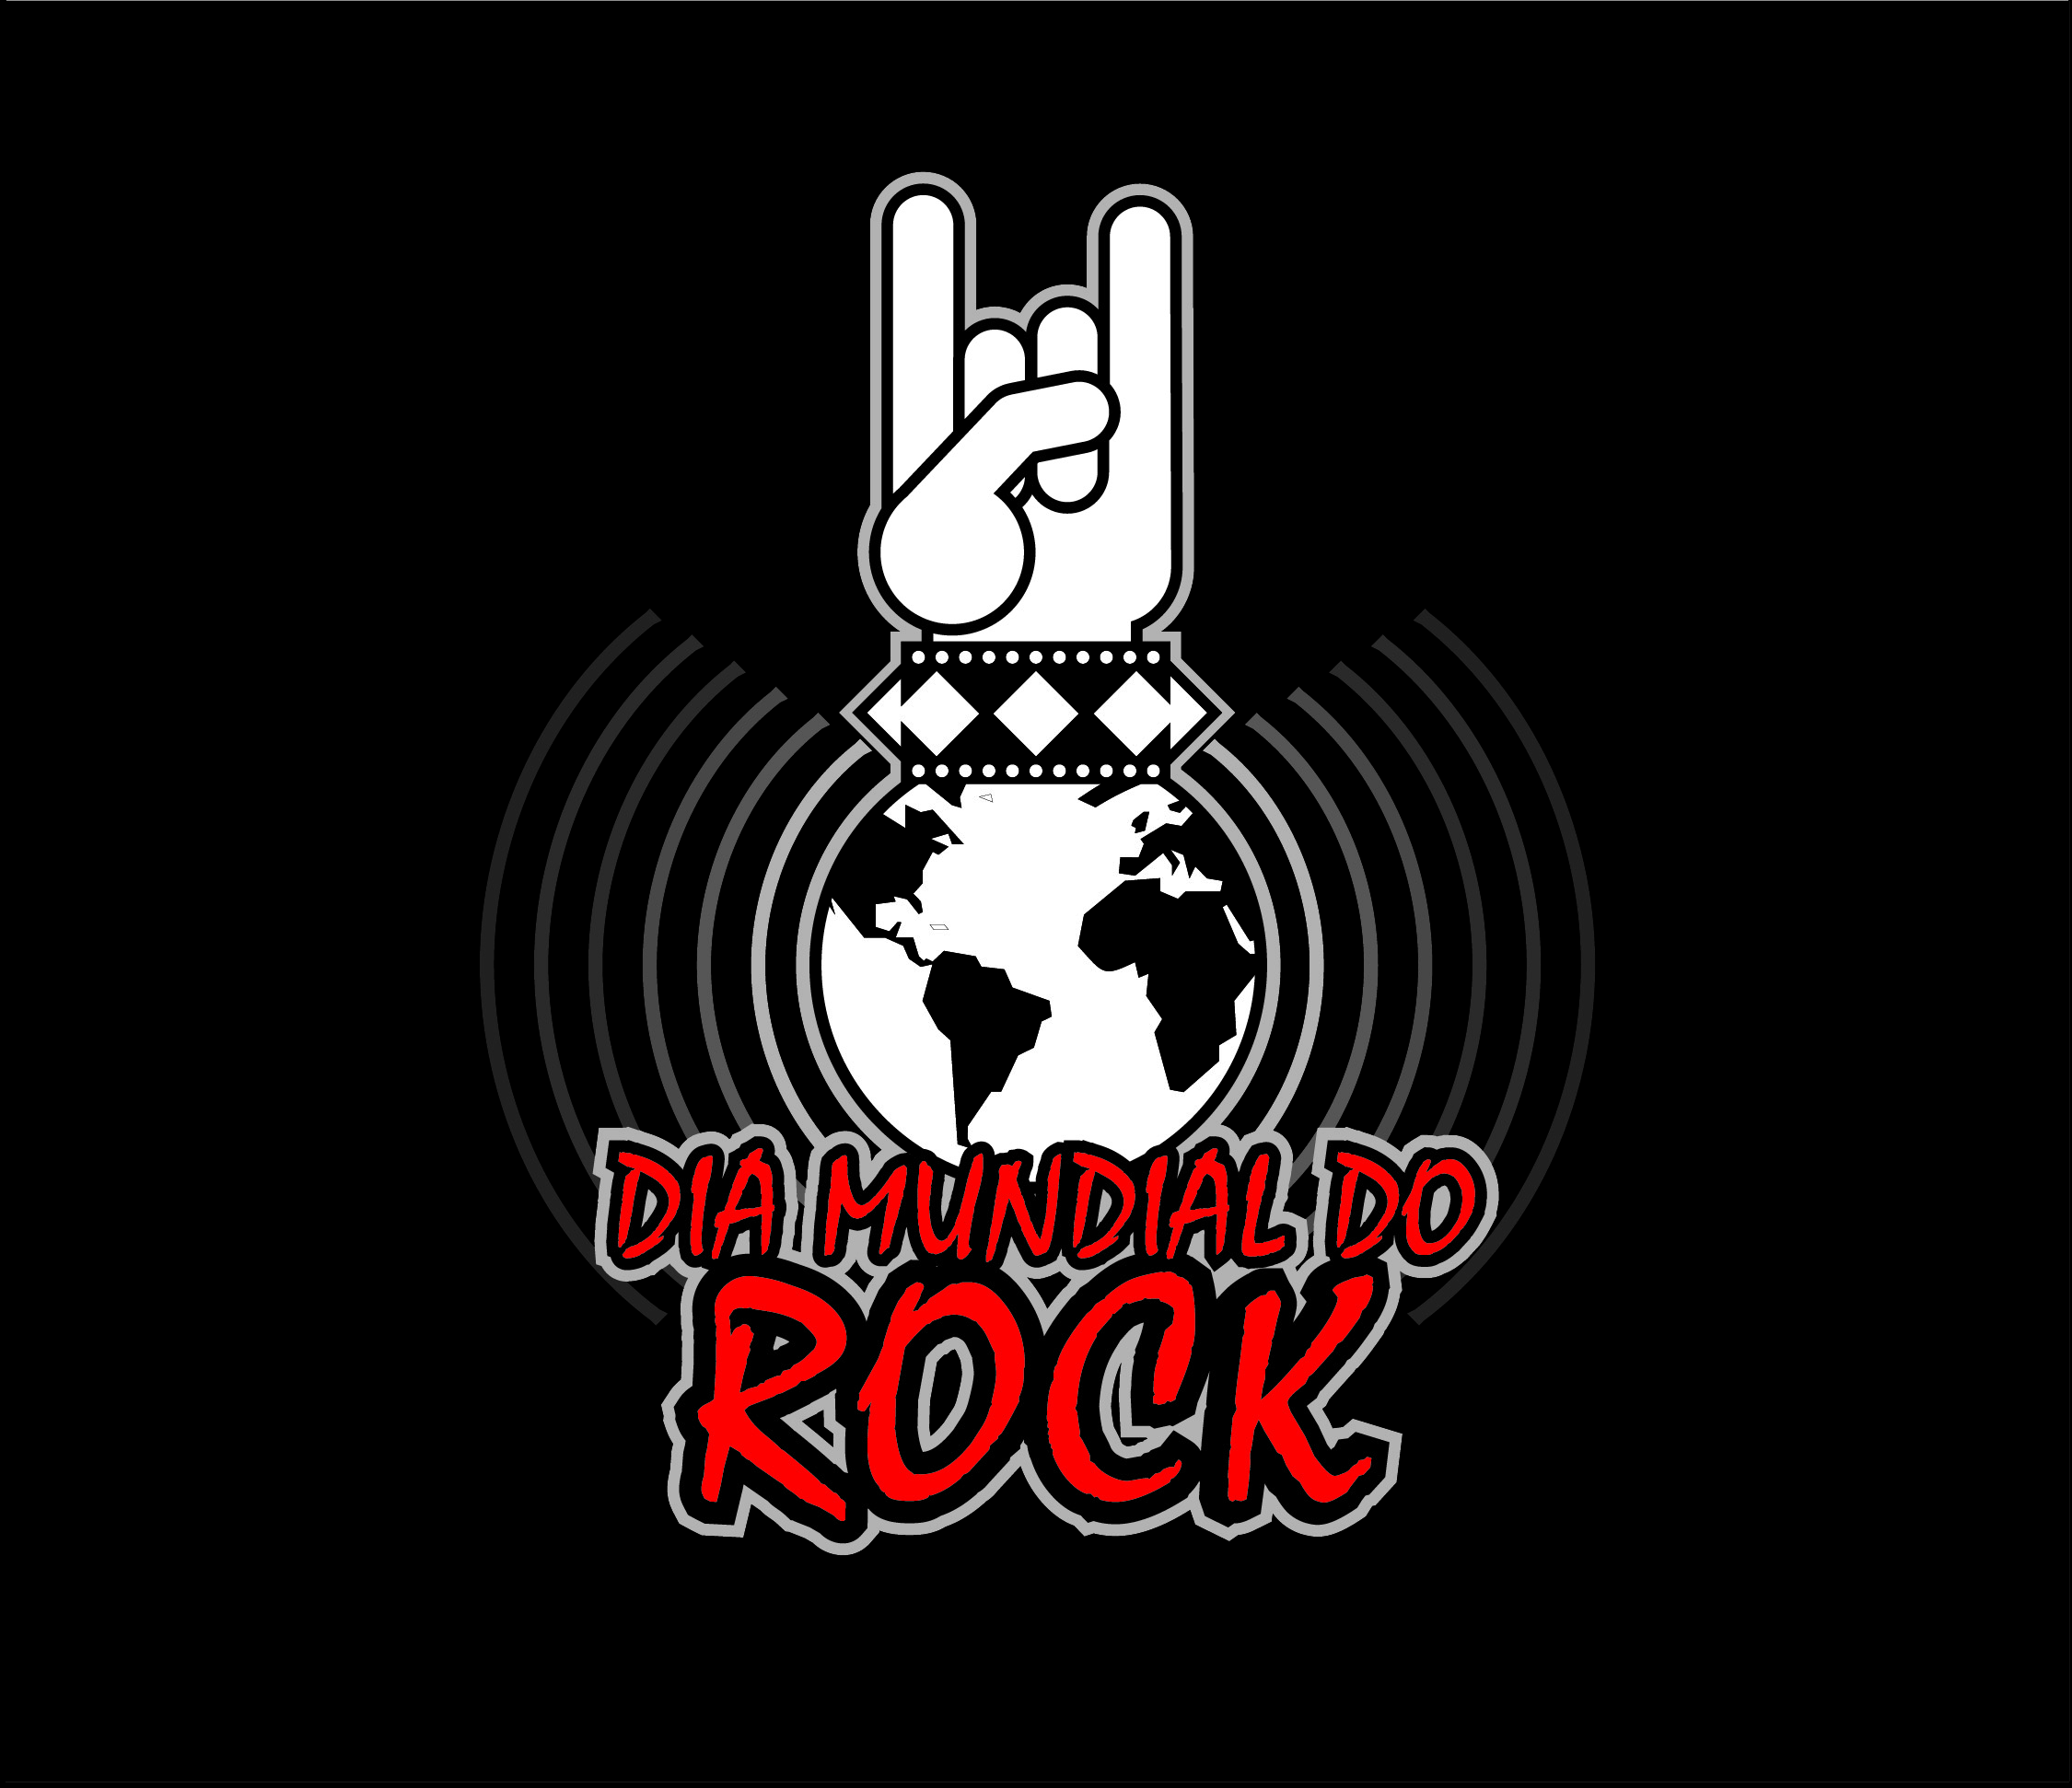 13 de Julho - Dia Mundial do Rock!, E a toda a nação roquei…